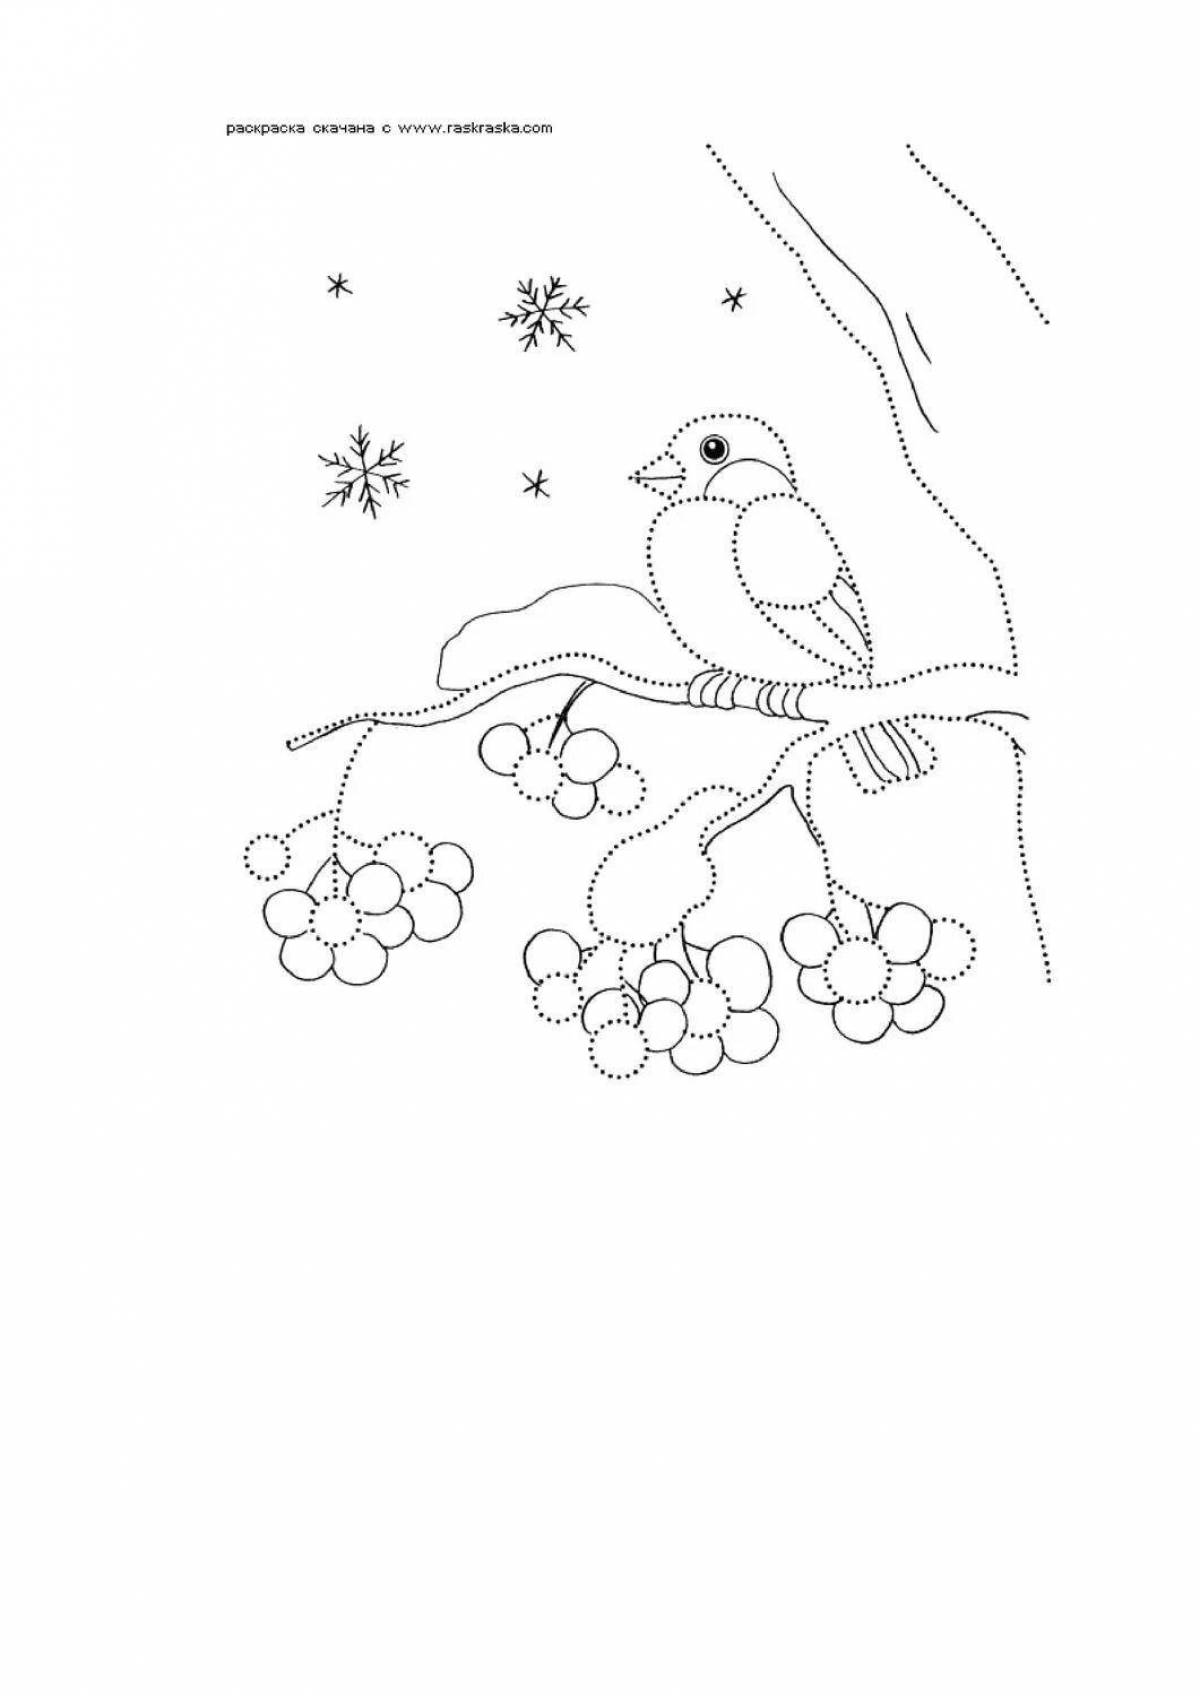 Блестяще заштрихованная стайка снегирей на ветках рябины